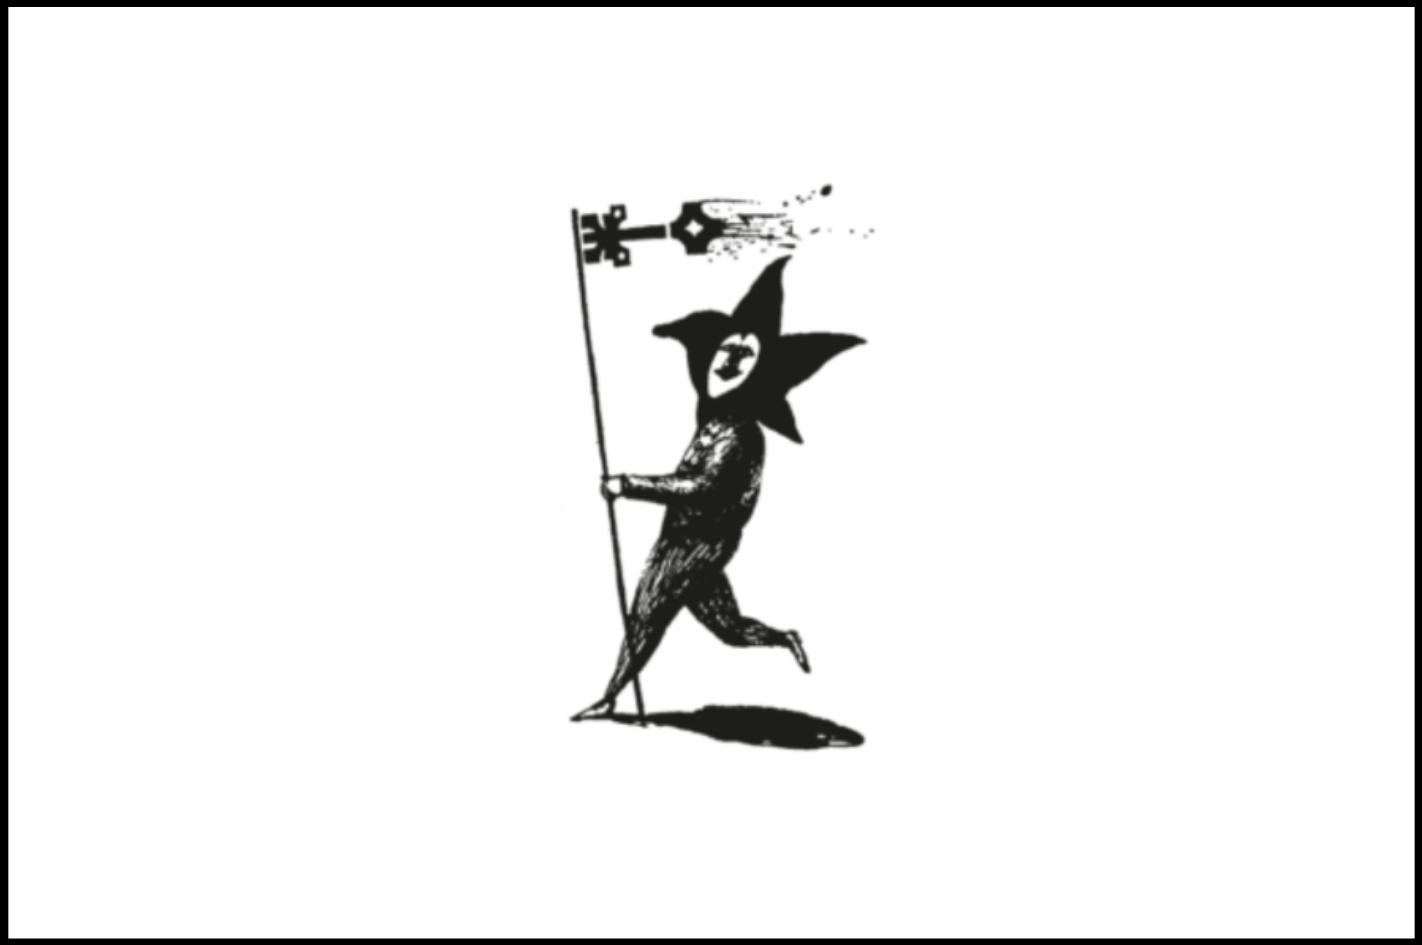 Na białym tle w centrum obrazka znajduje się naszkicowany, czarny błazen, który trzyma kijek zakończony abstrakcyjnym kształtem w kolorze czarnym.